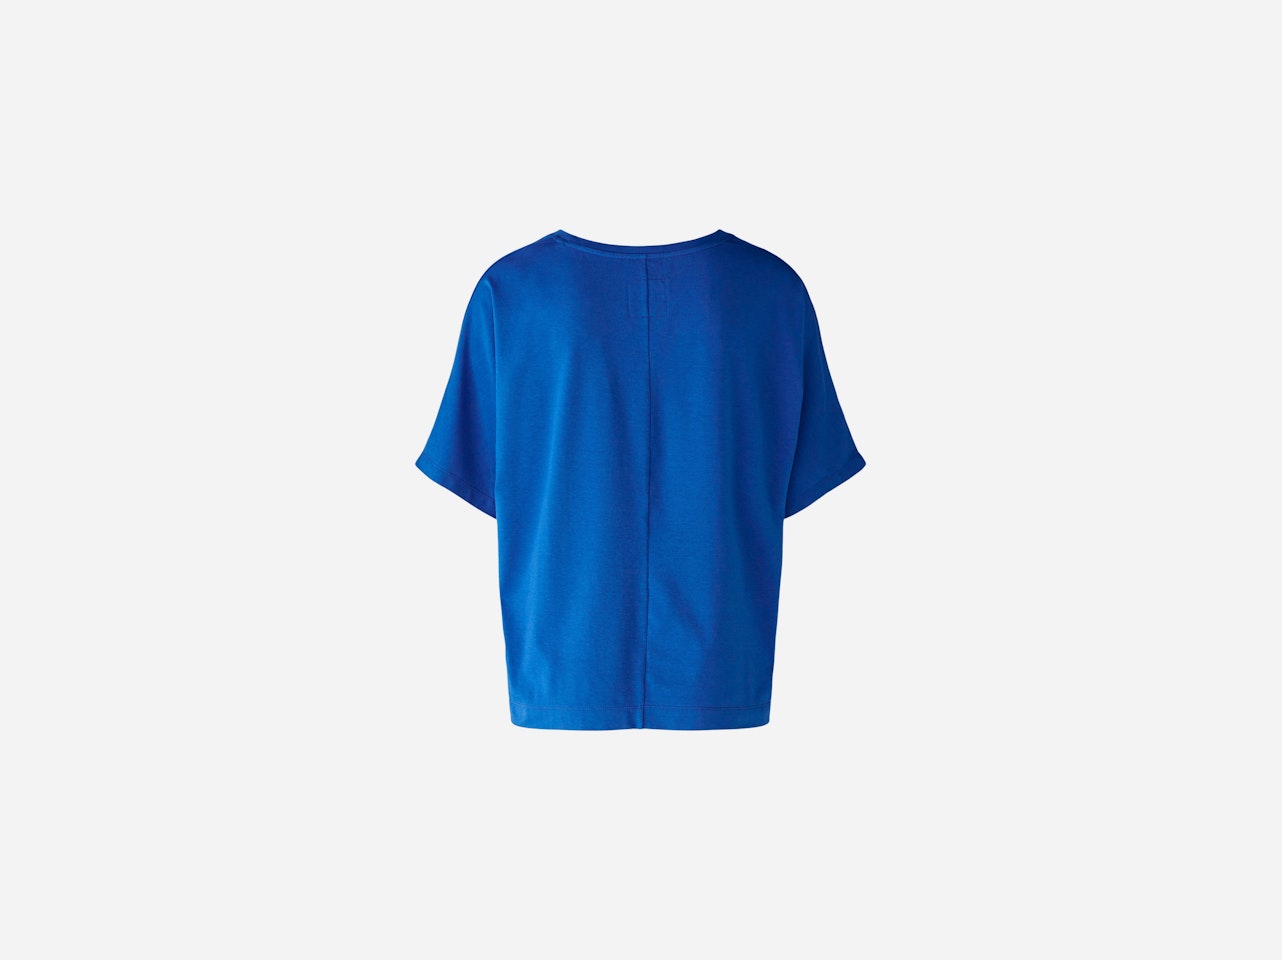 Bild 7 von Blouse shirt viscose-cotton blend in blue lolite | Oui